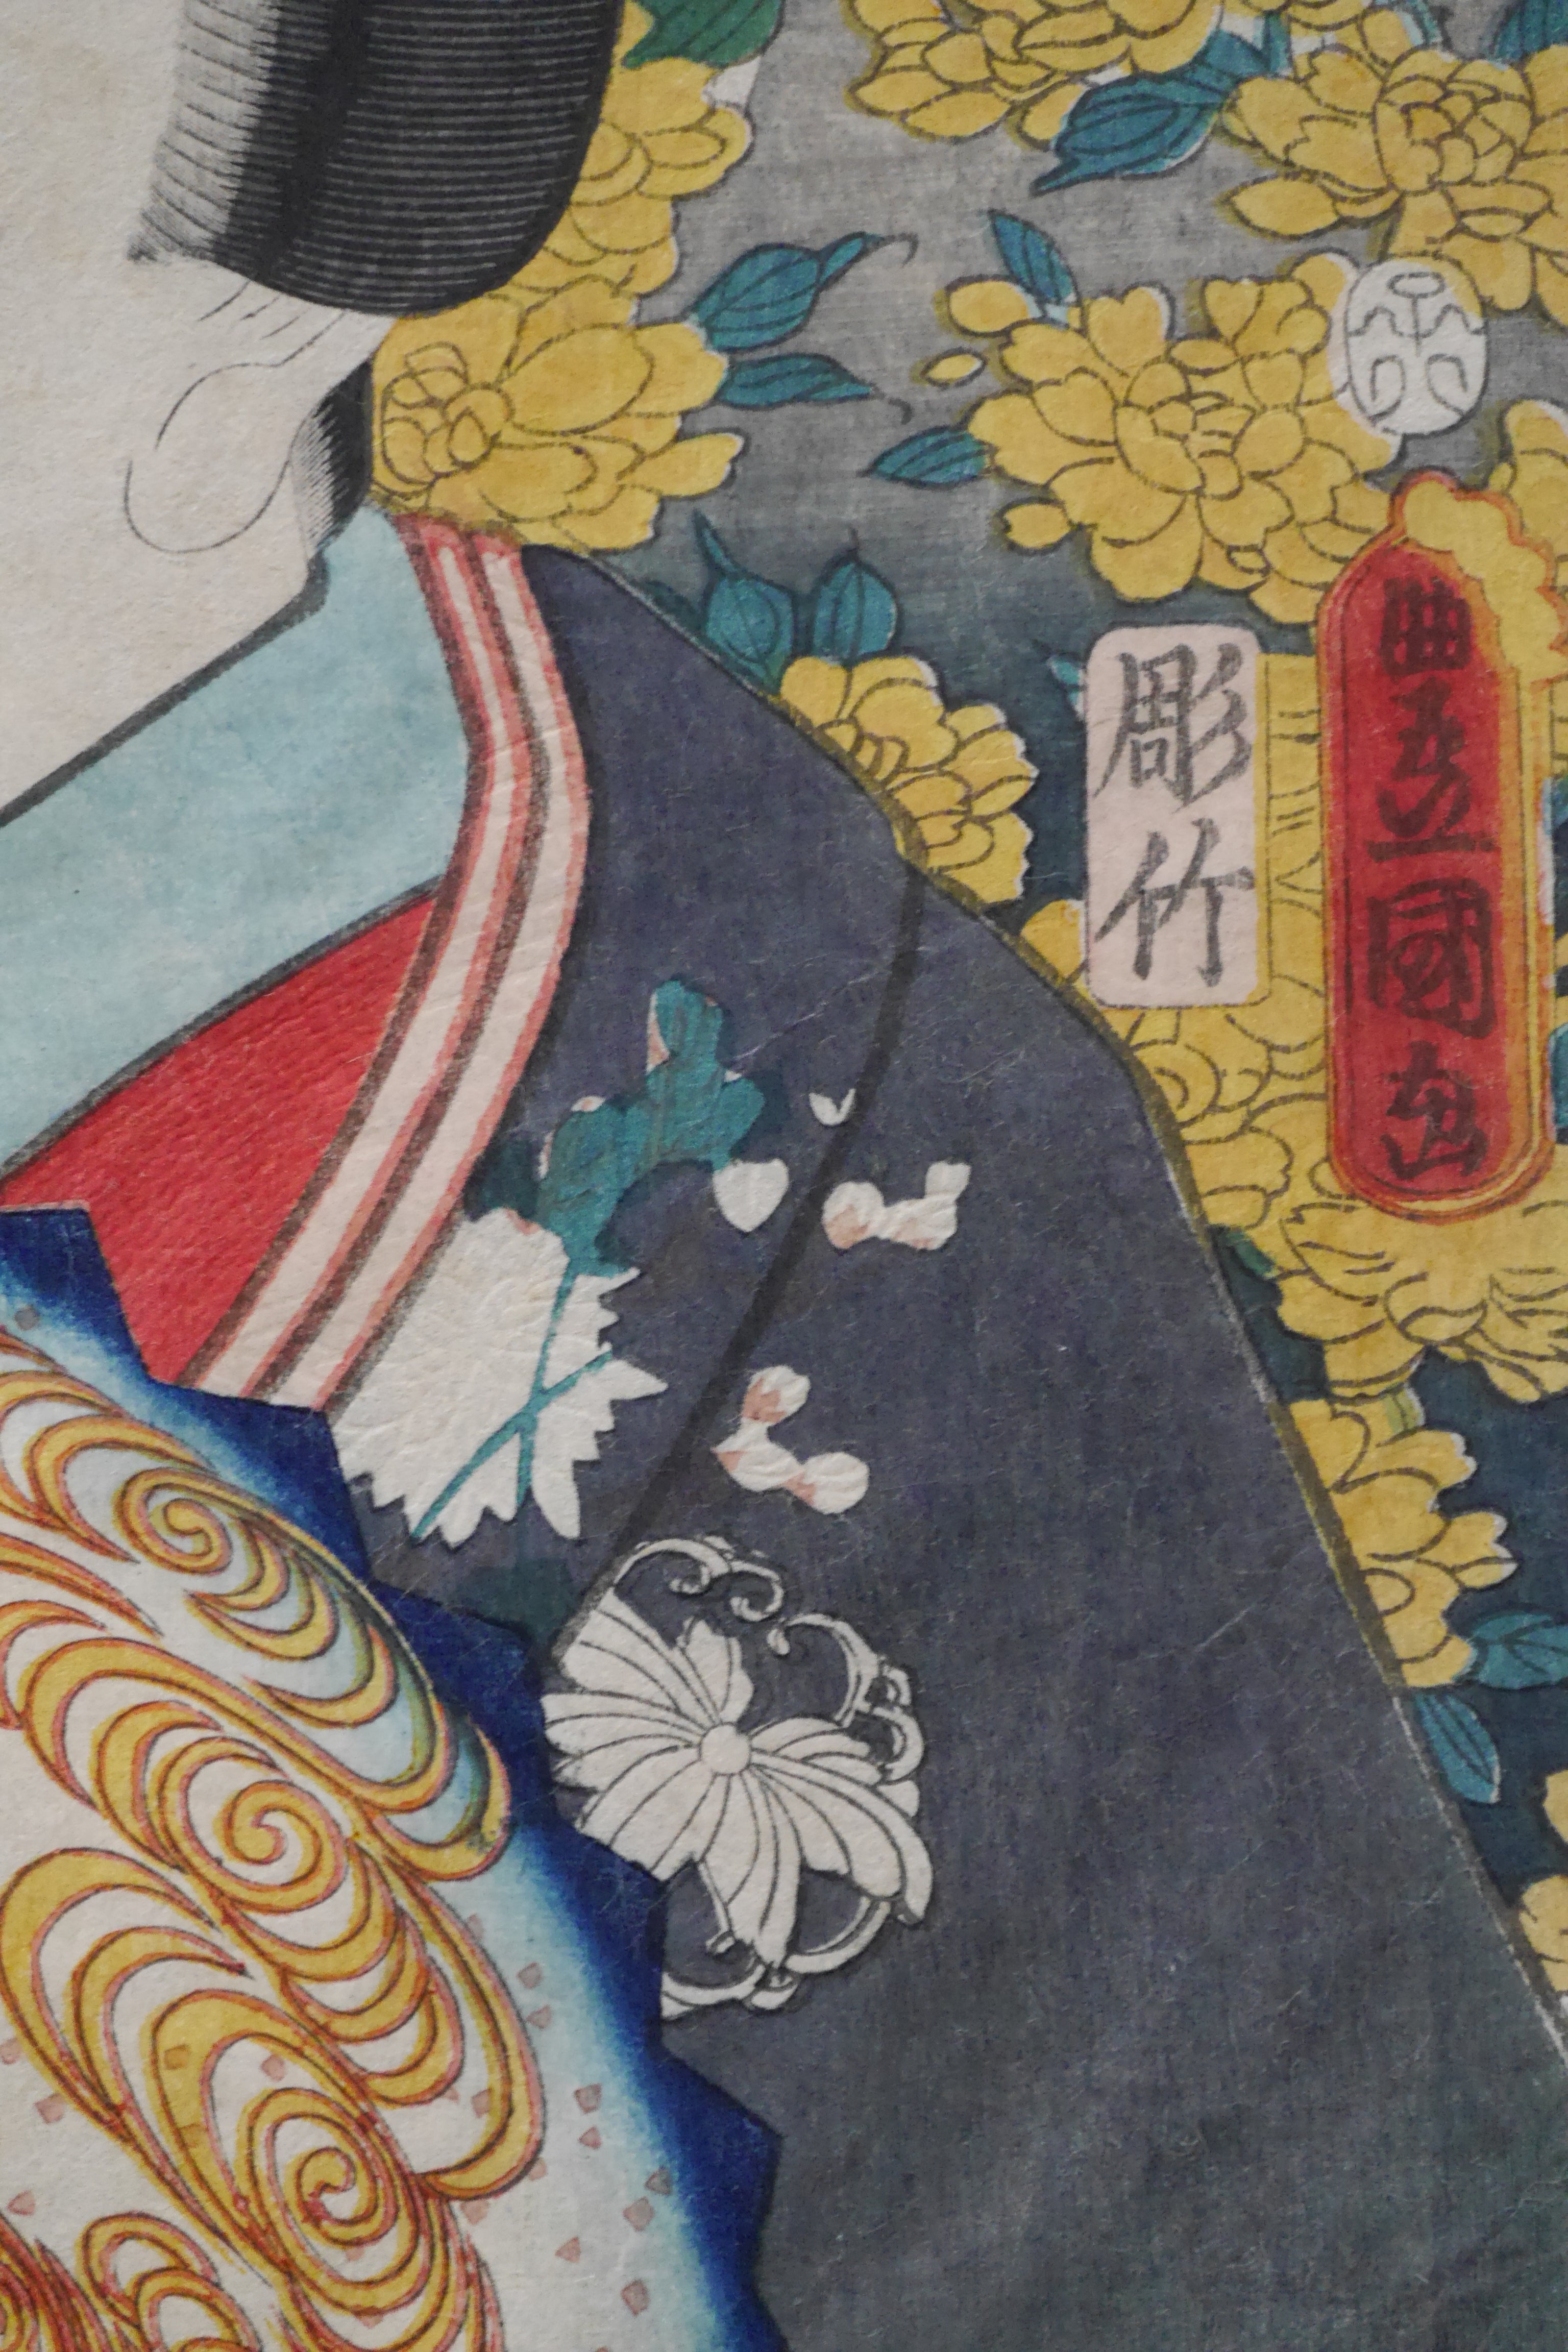 No. 8, Hana no en: Actor Segawa Kikunojô V by Utagawa Kunisada I (Toyokuni III) (1786–1864) and Sadahide Utagawa (1807 - 1873) | Date: 1852 | Japanese Woodblock Print - Ukiyo-e 浮世絵  | 36,3 cm x 25,3 cm